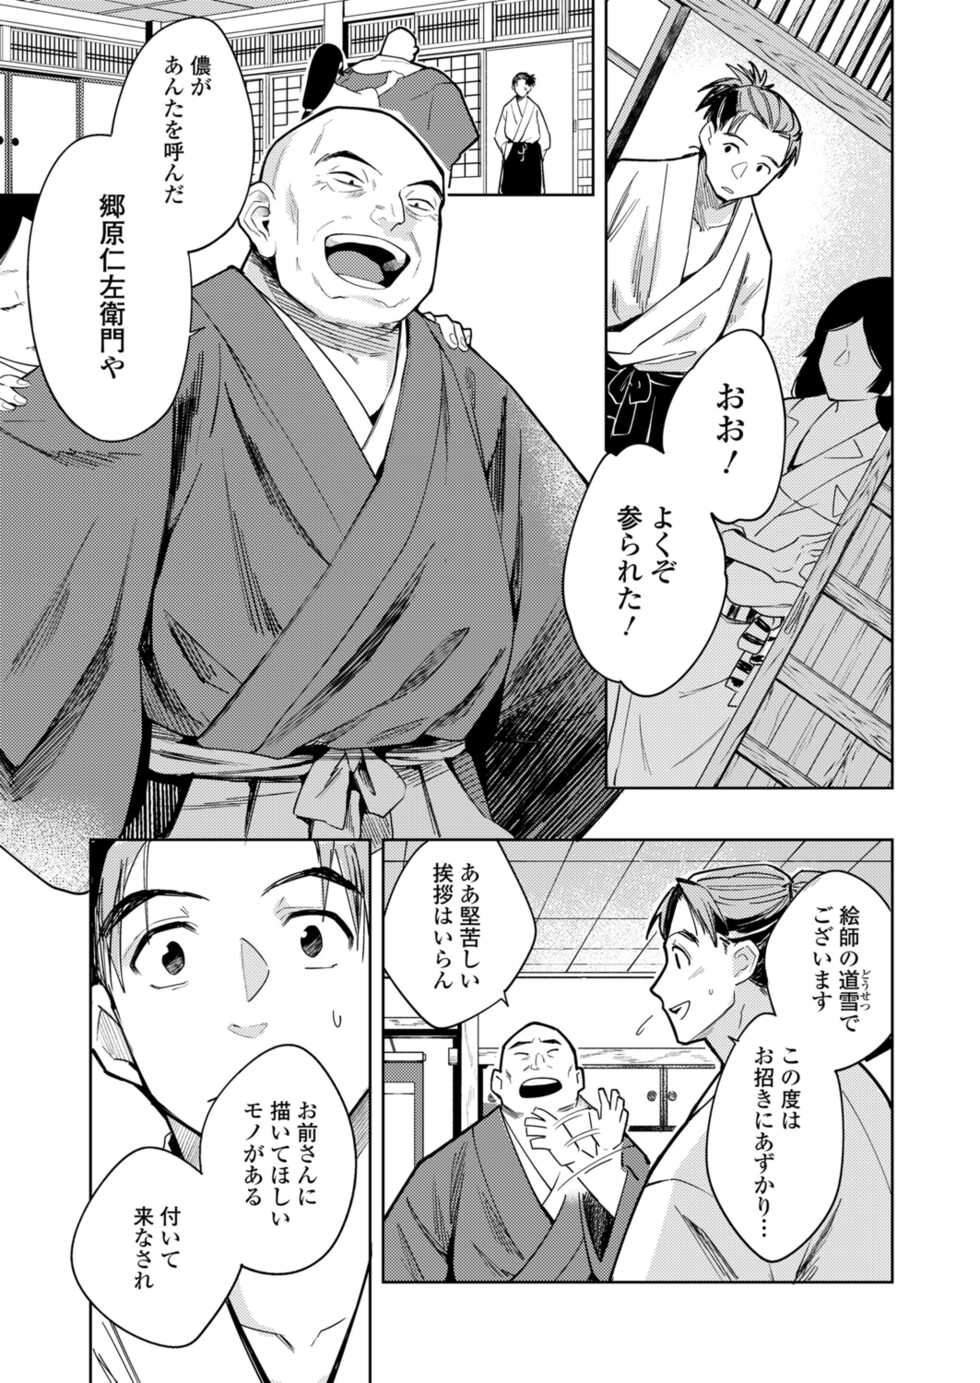 Towako 12 [Digital] - Page 5